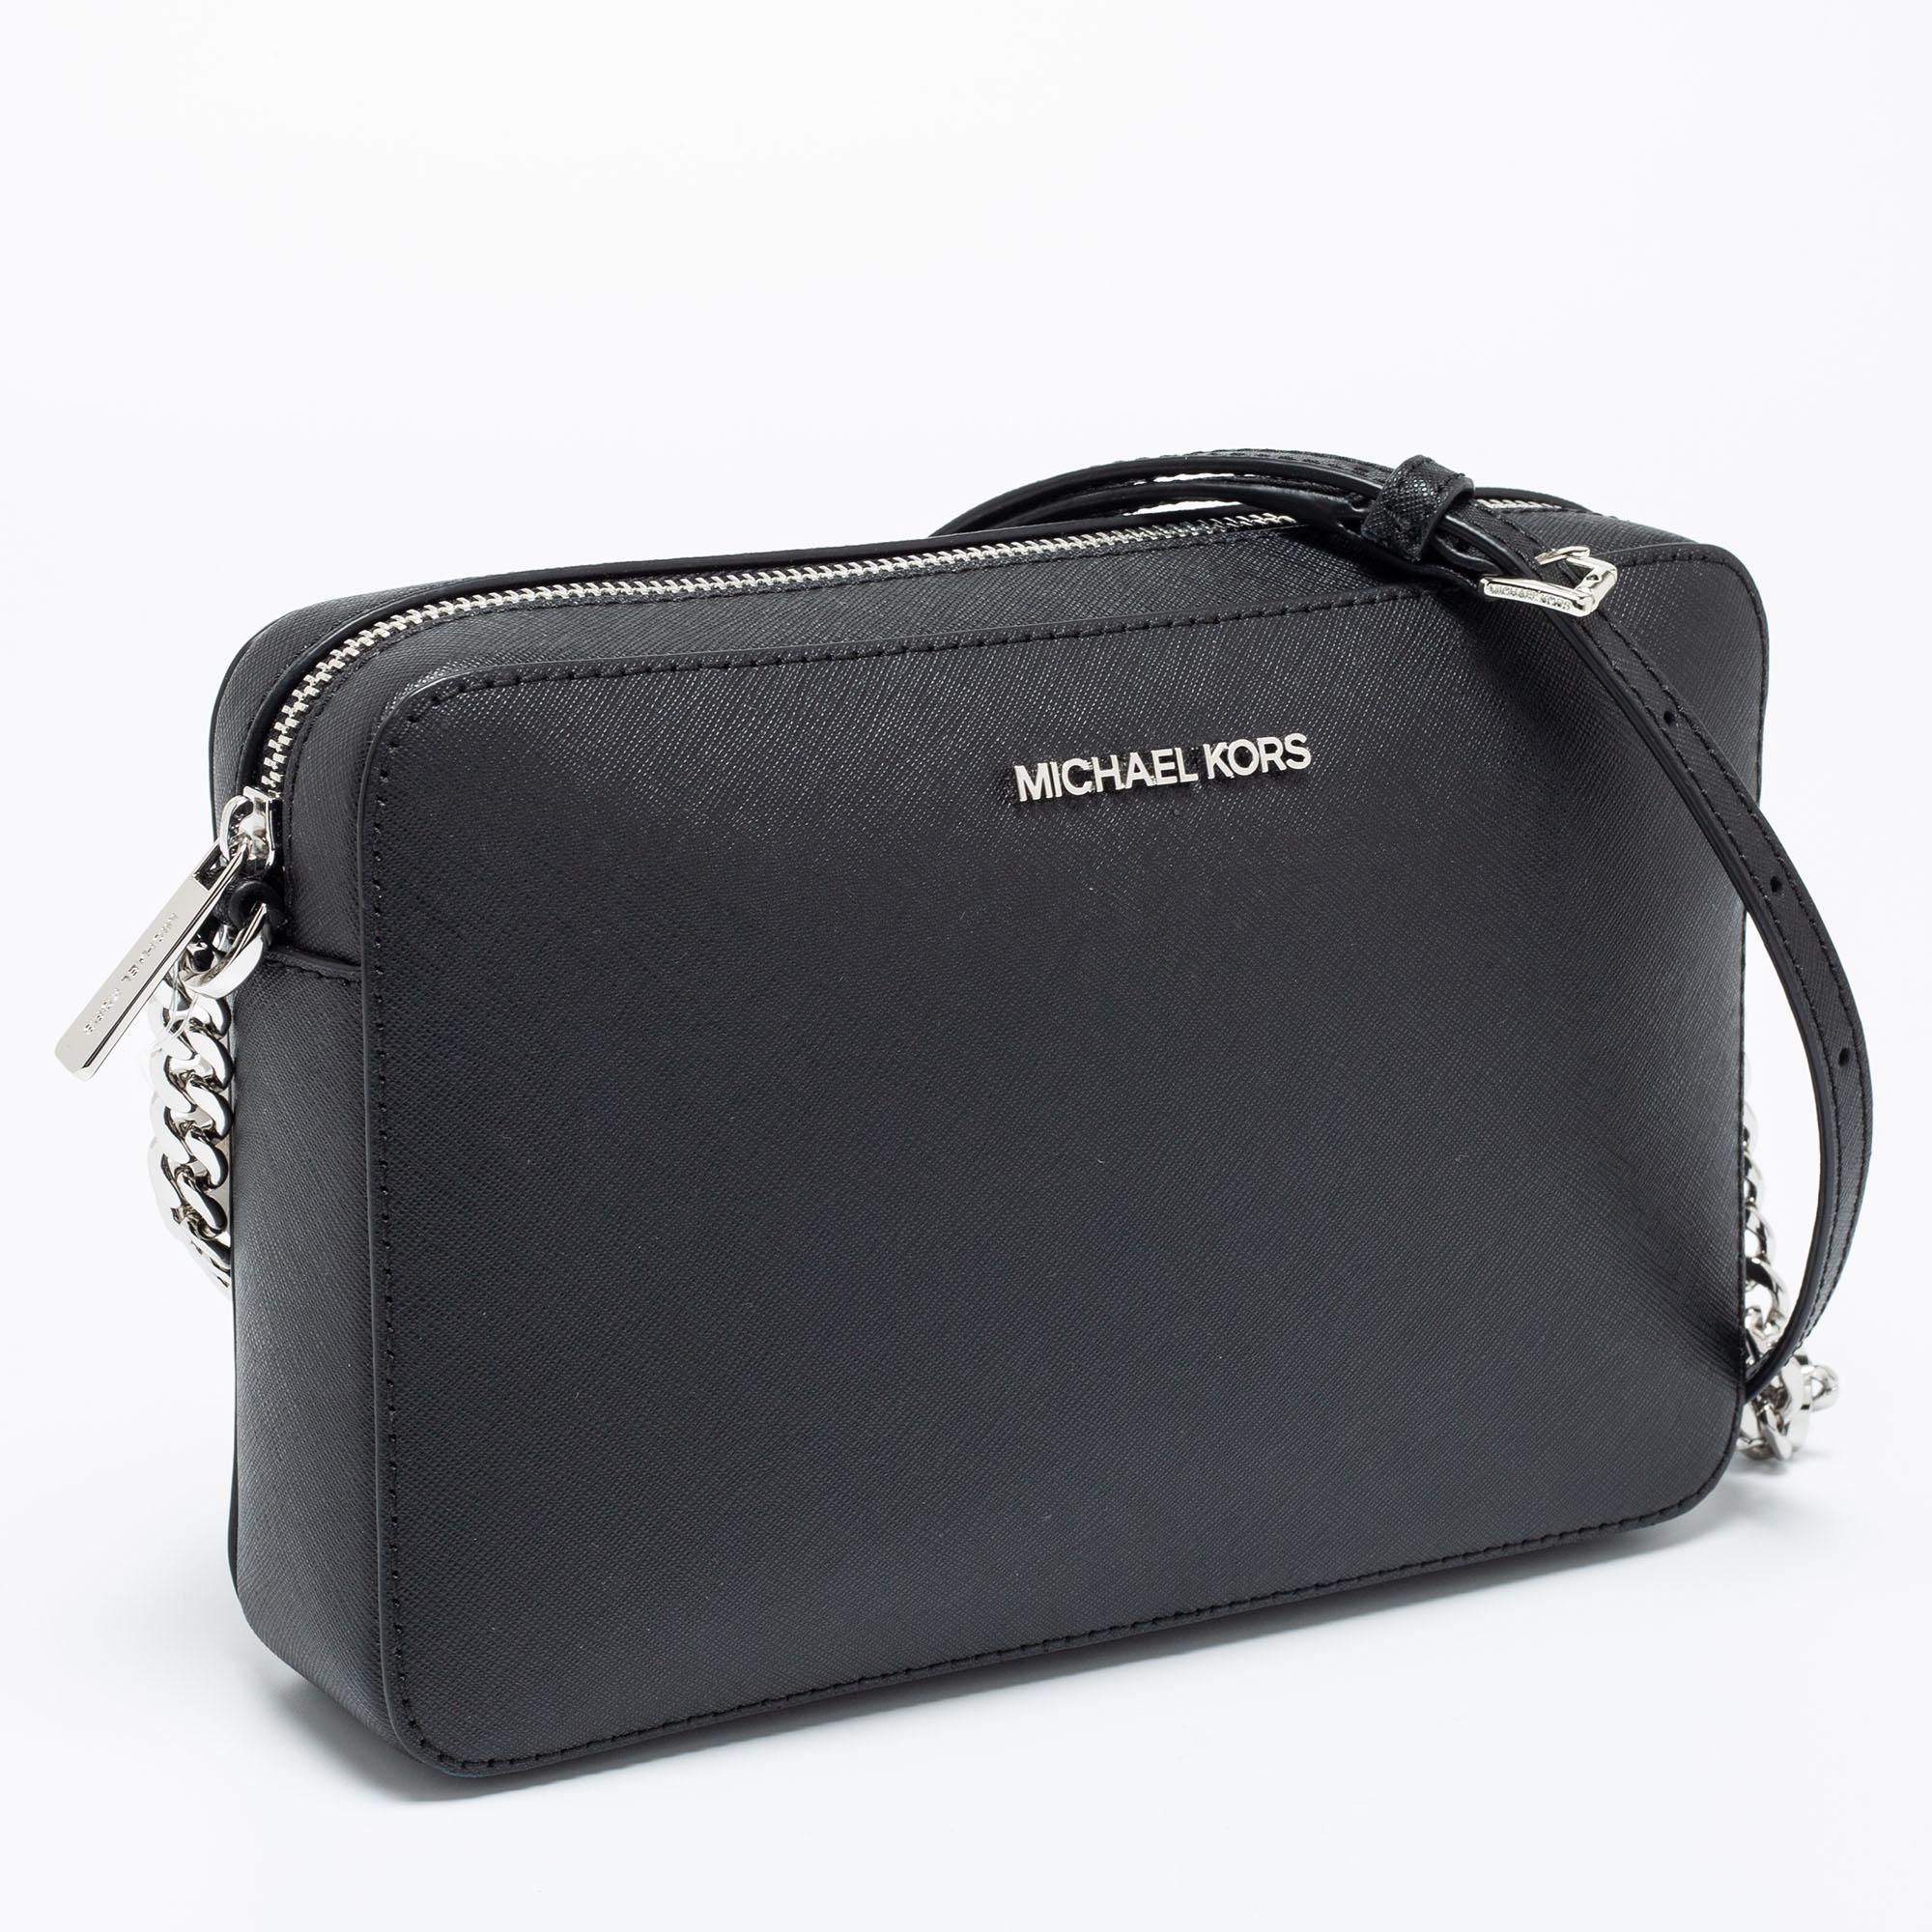 michael kors black crossbody handbag